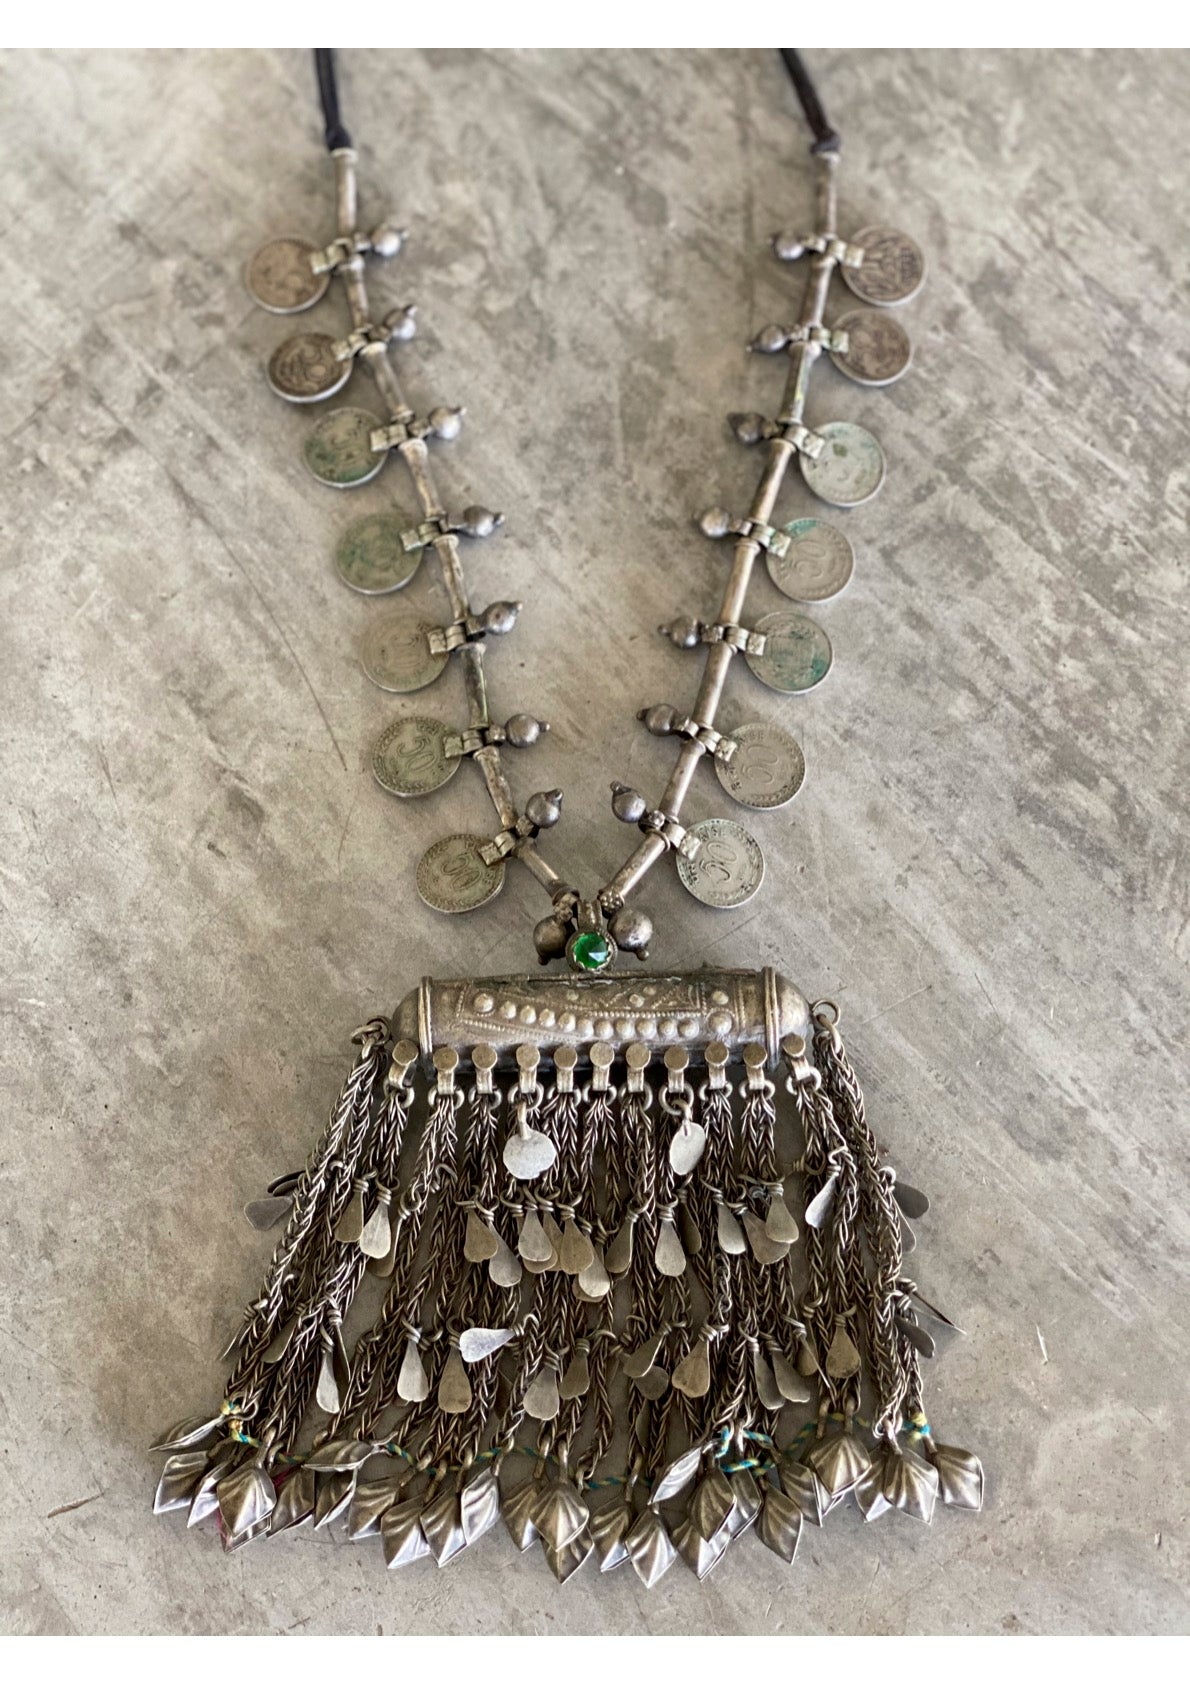 Huge fringe amulet necklace